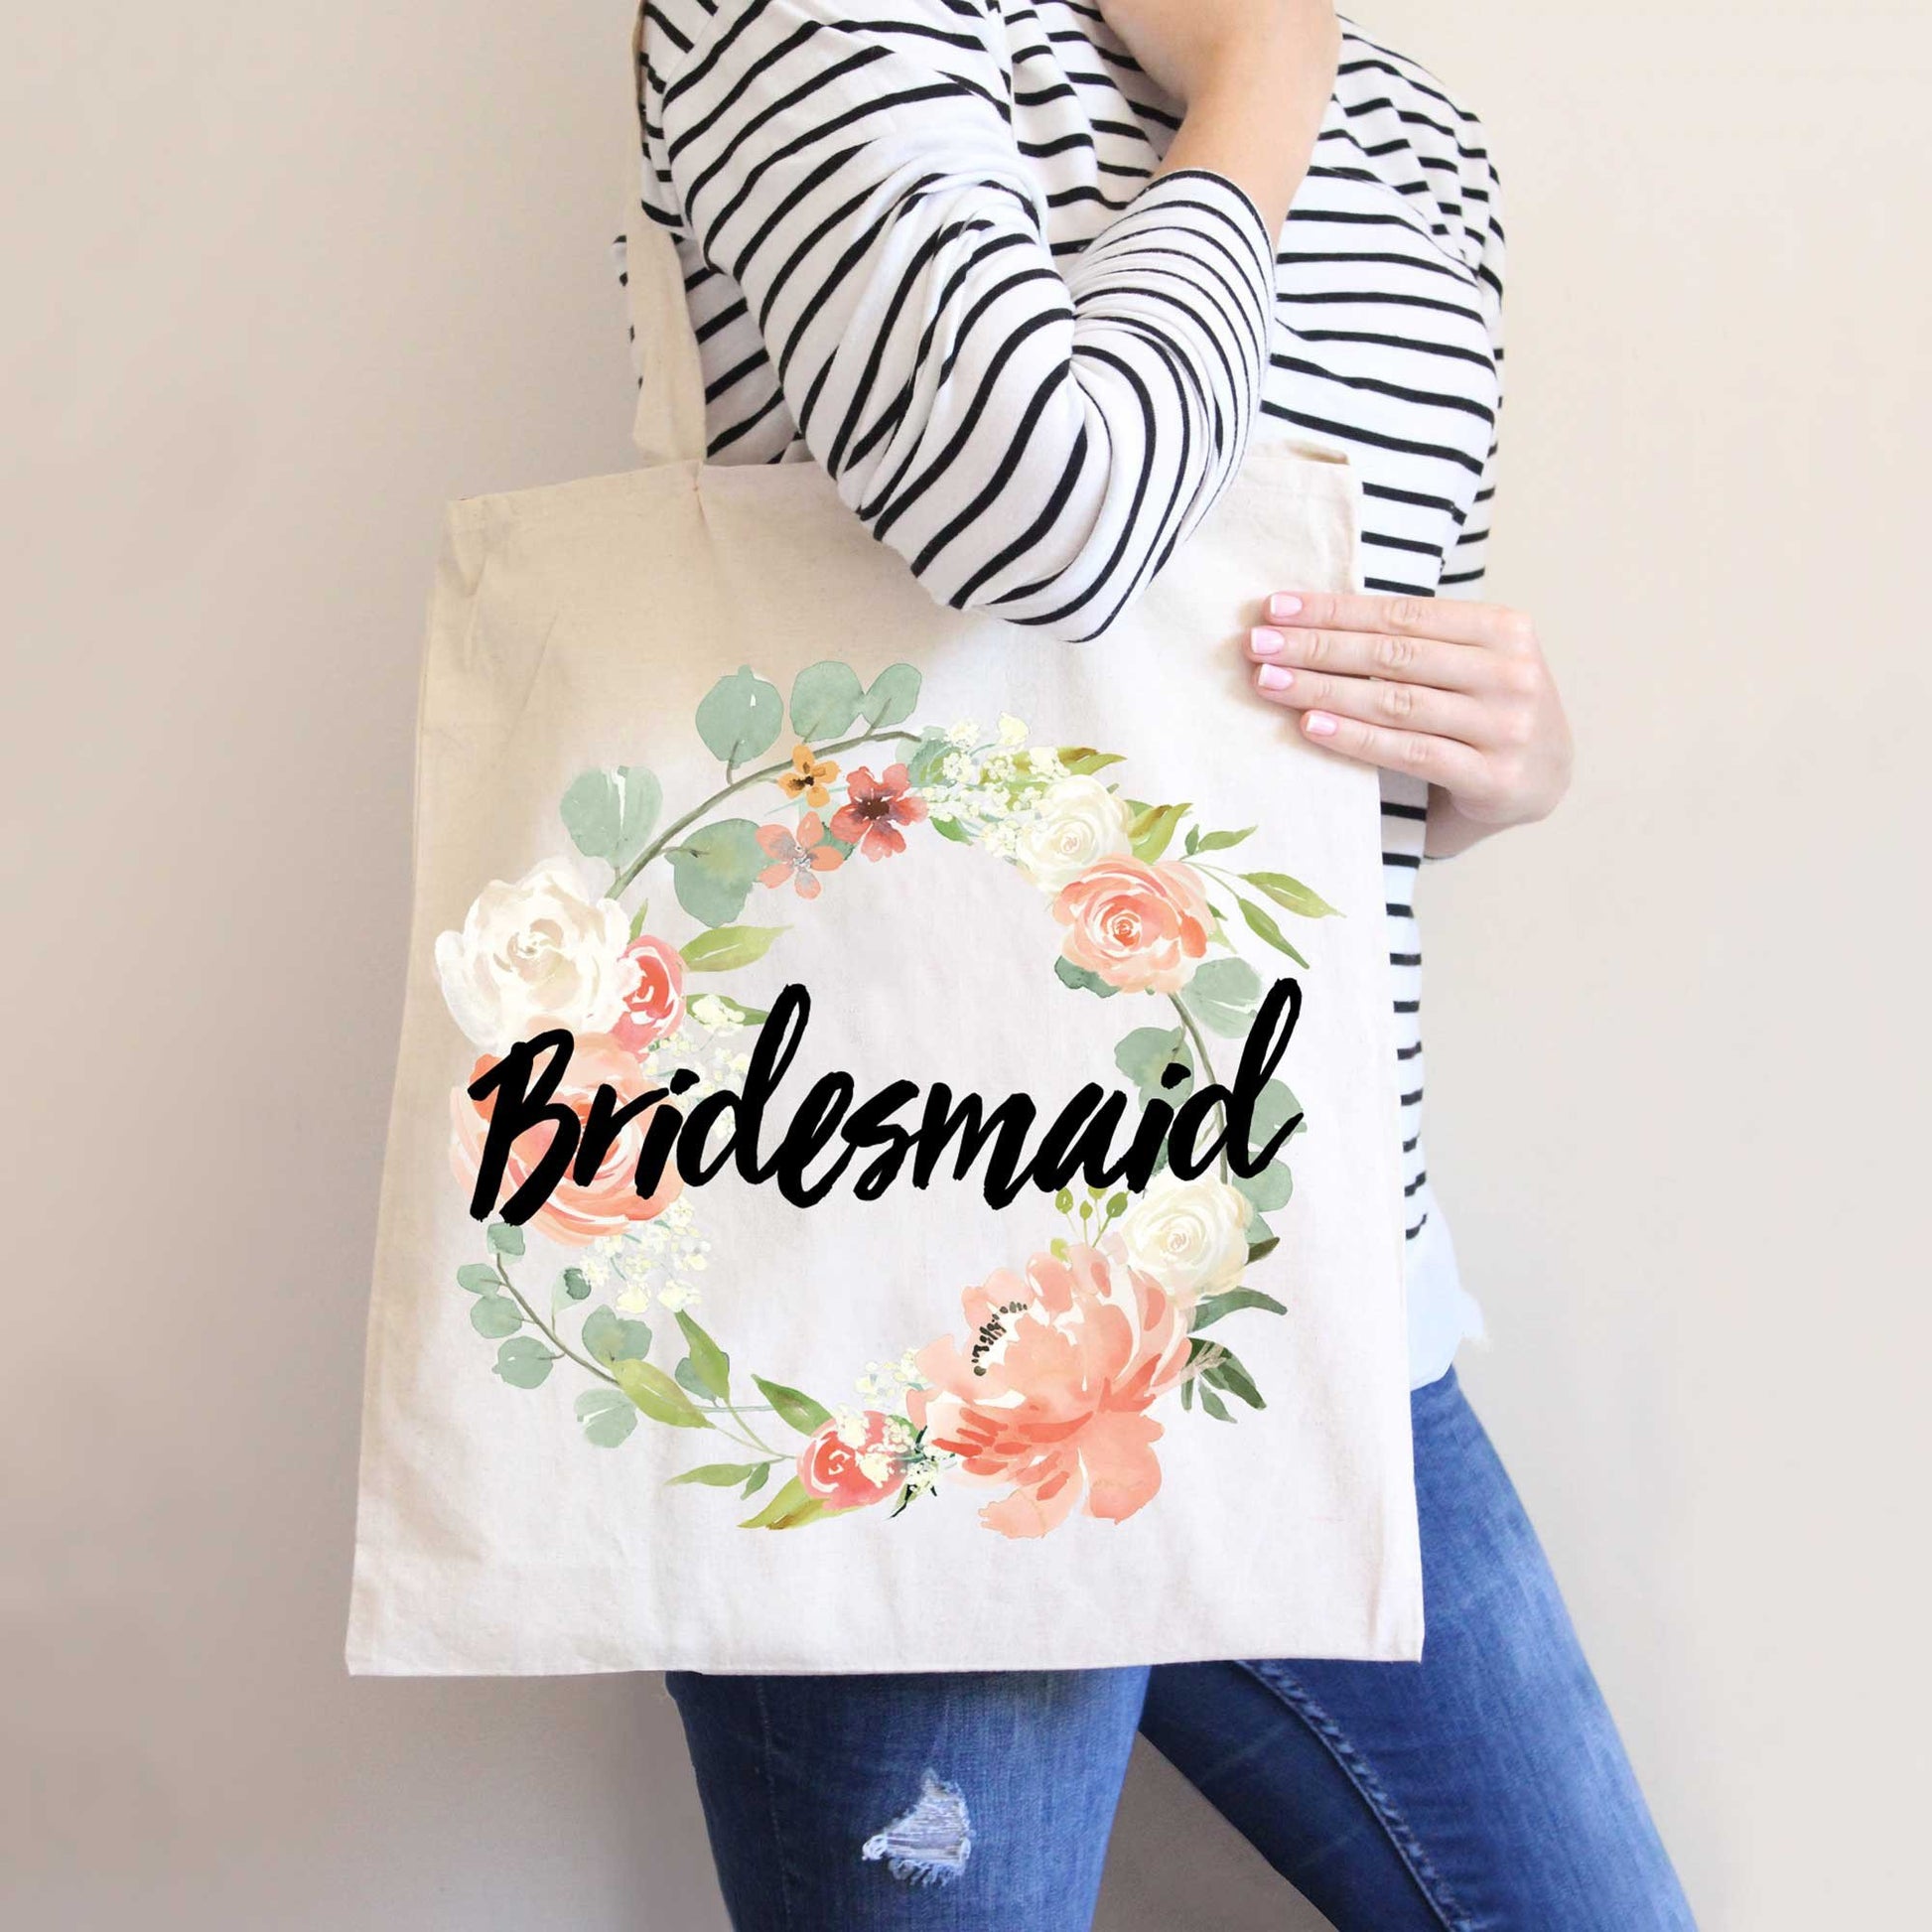 Bridesmaid Tote Bags - Canvas